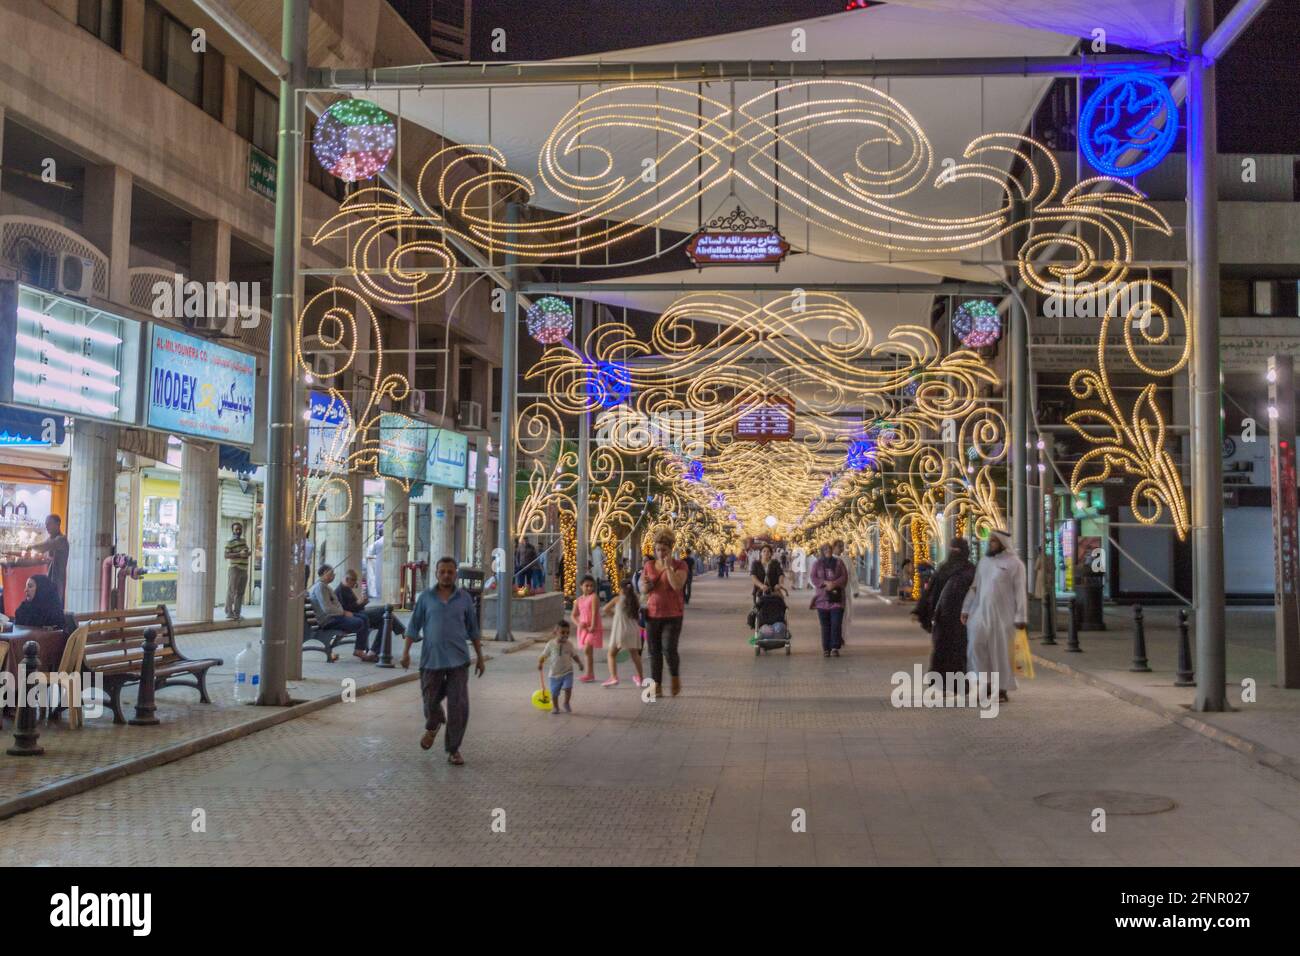 KUWAIT-STADT, KUWAIT - 17. MÄRZ 2017: Einkaufsstraße im zentralen Souq in Kuwait-Stadt Stockfoto